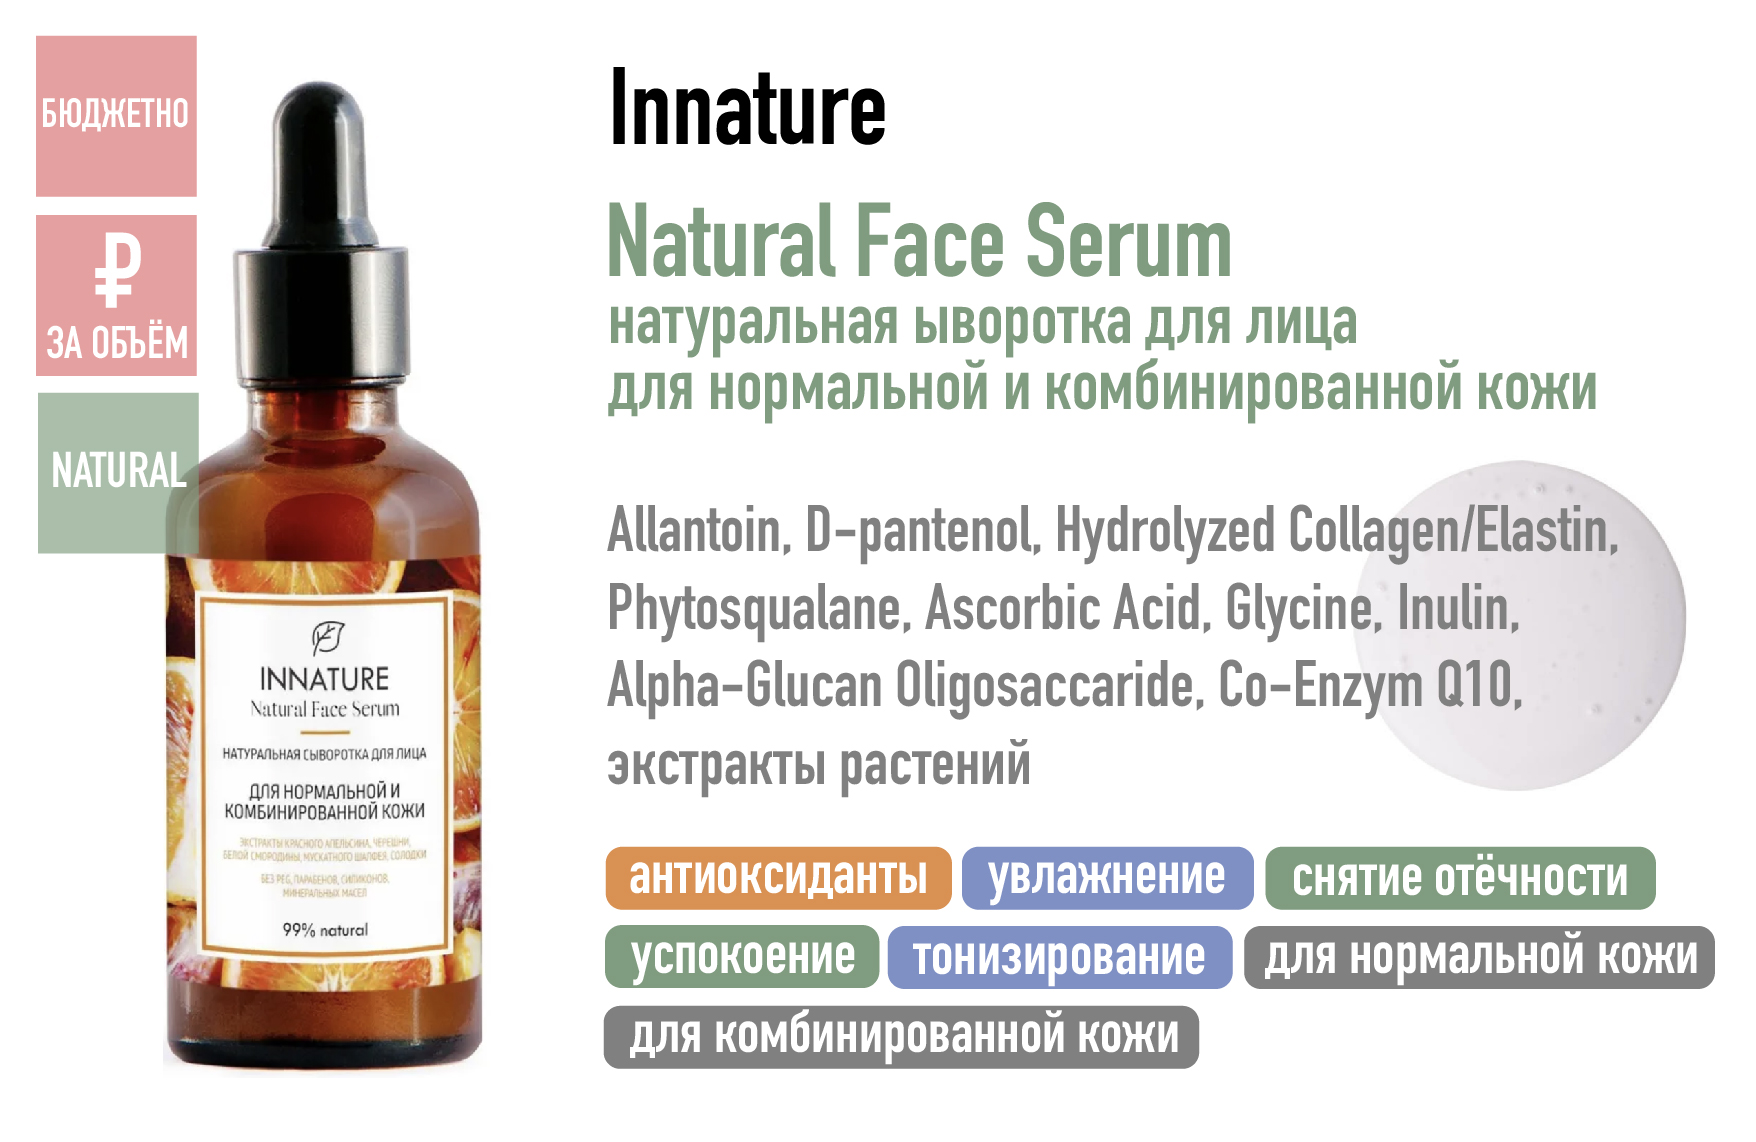 Innature Natural Face Serum / Натуральная сыворотка для лица для нормальной и комбинированной кожи